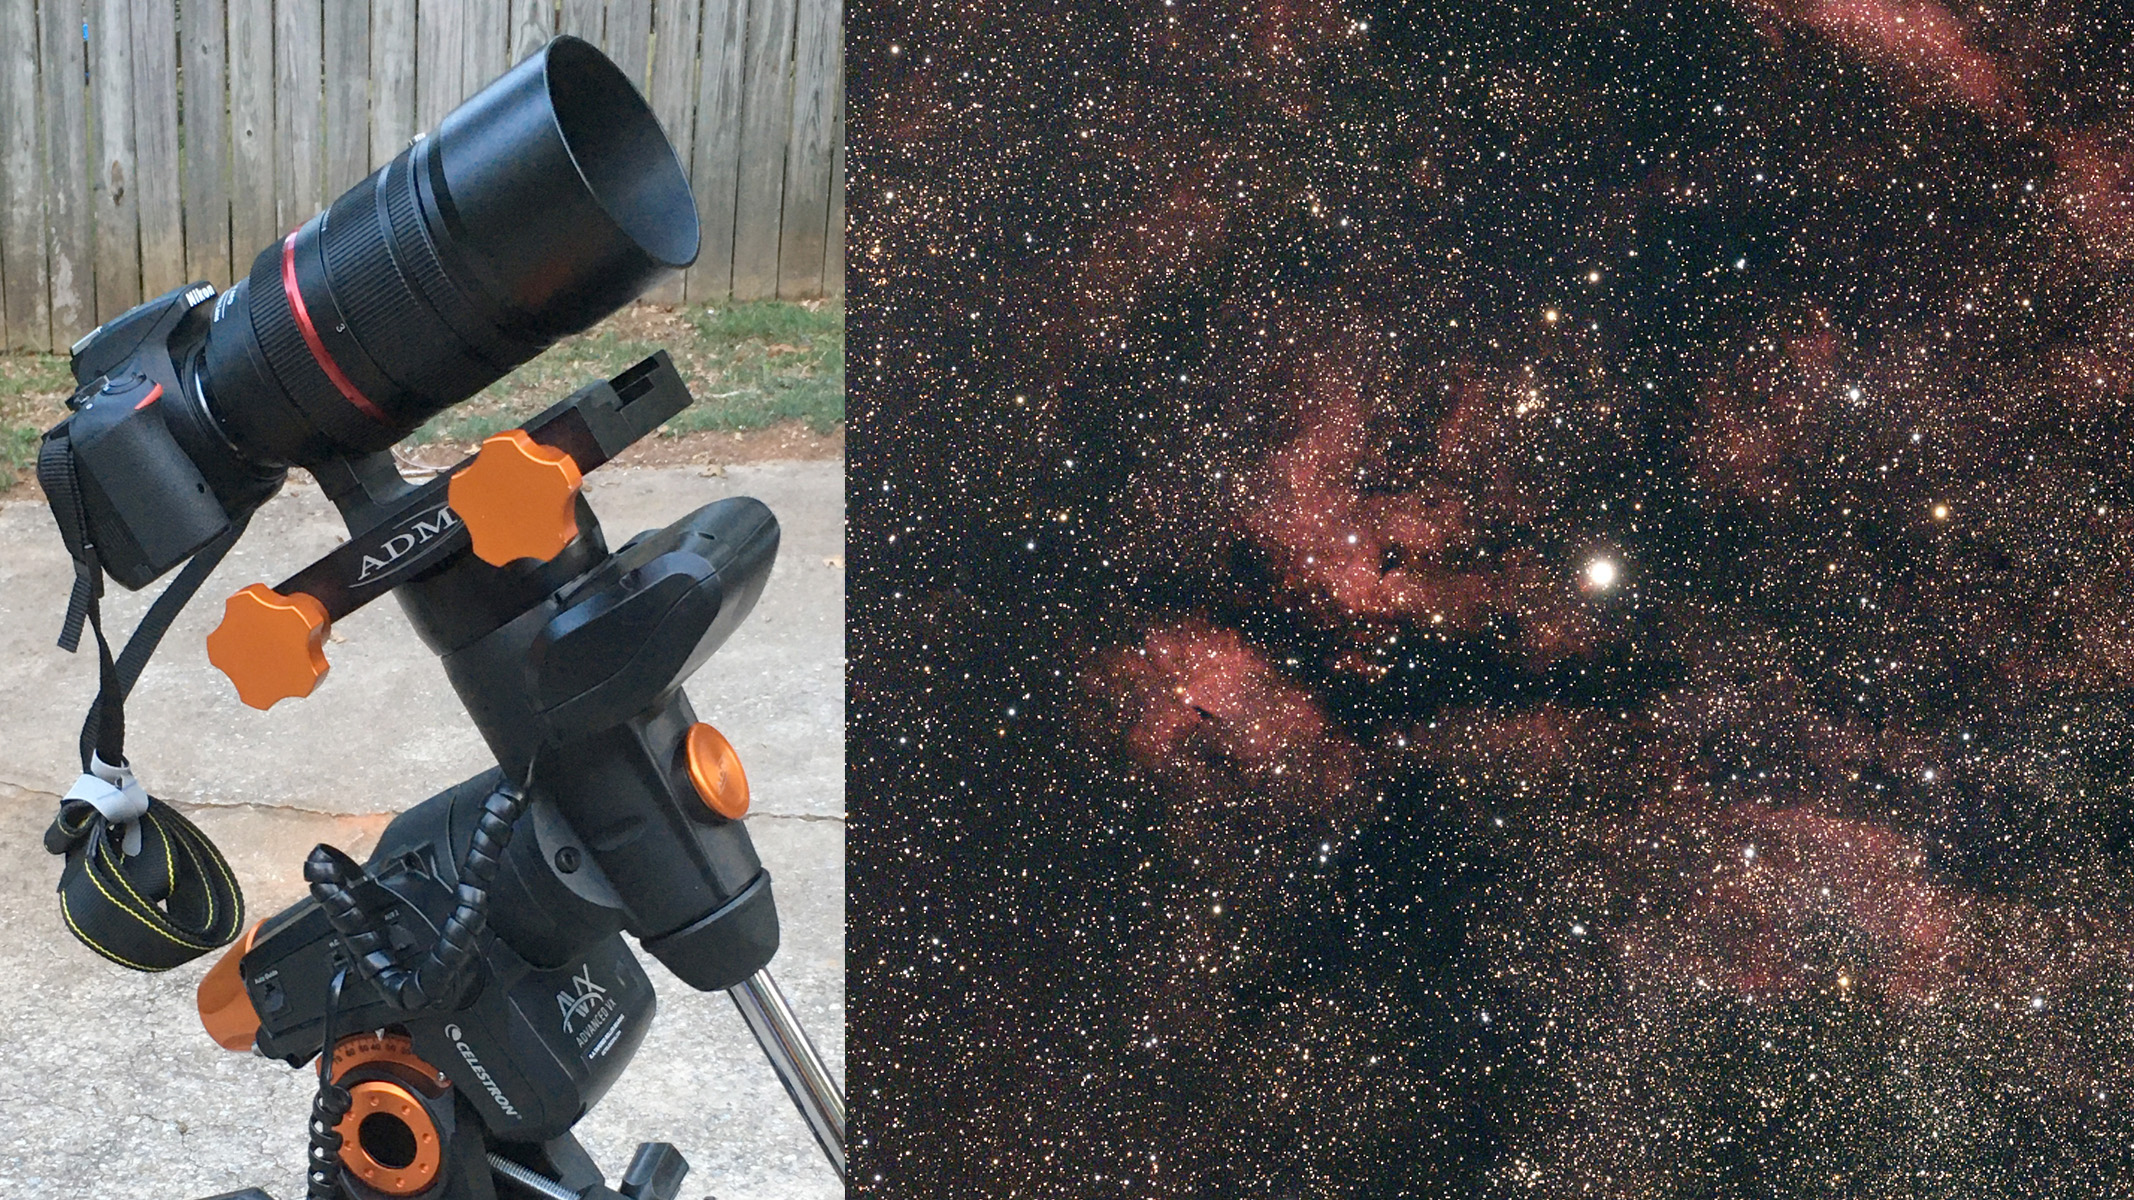 Nebula image composited next to the telescope setup